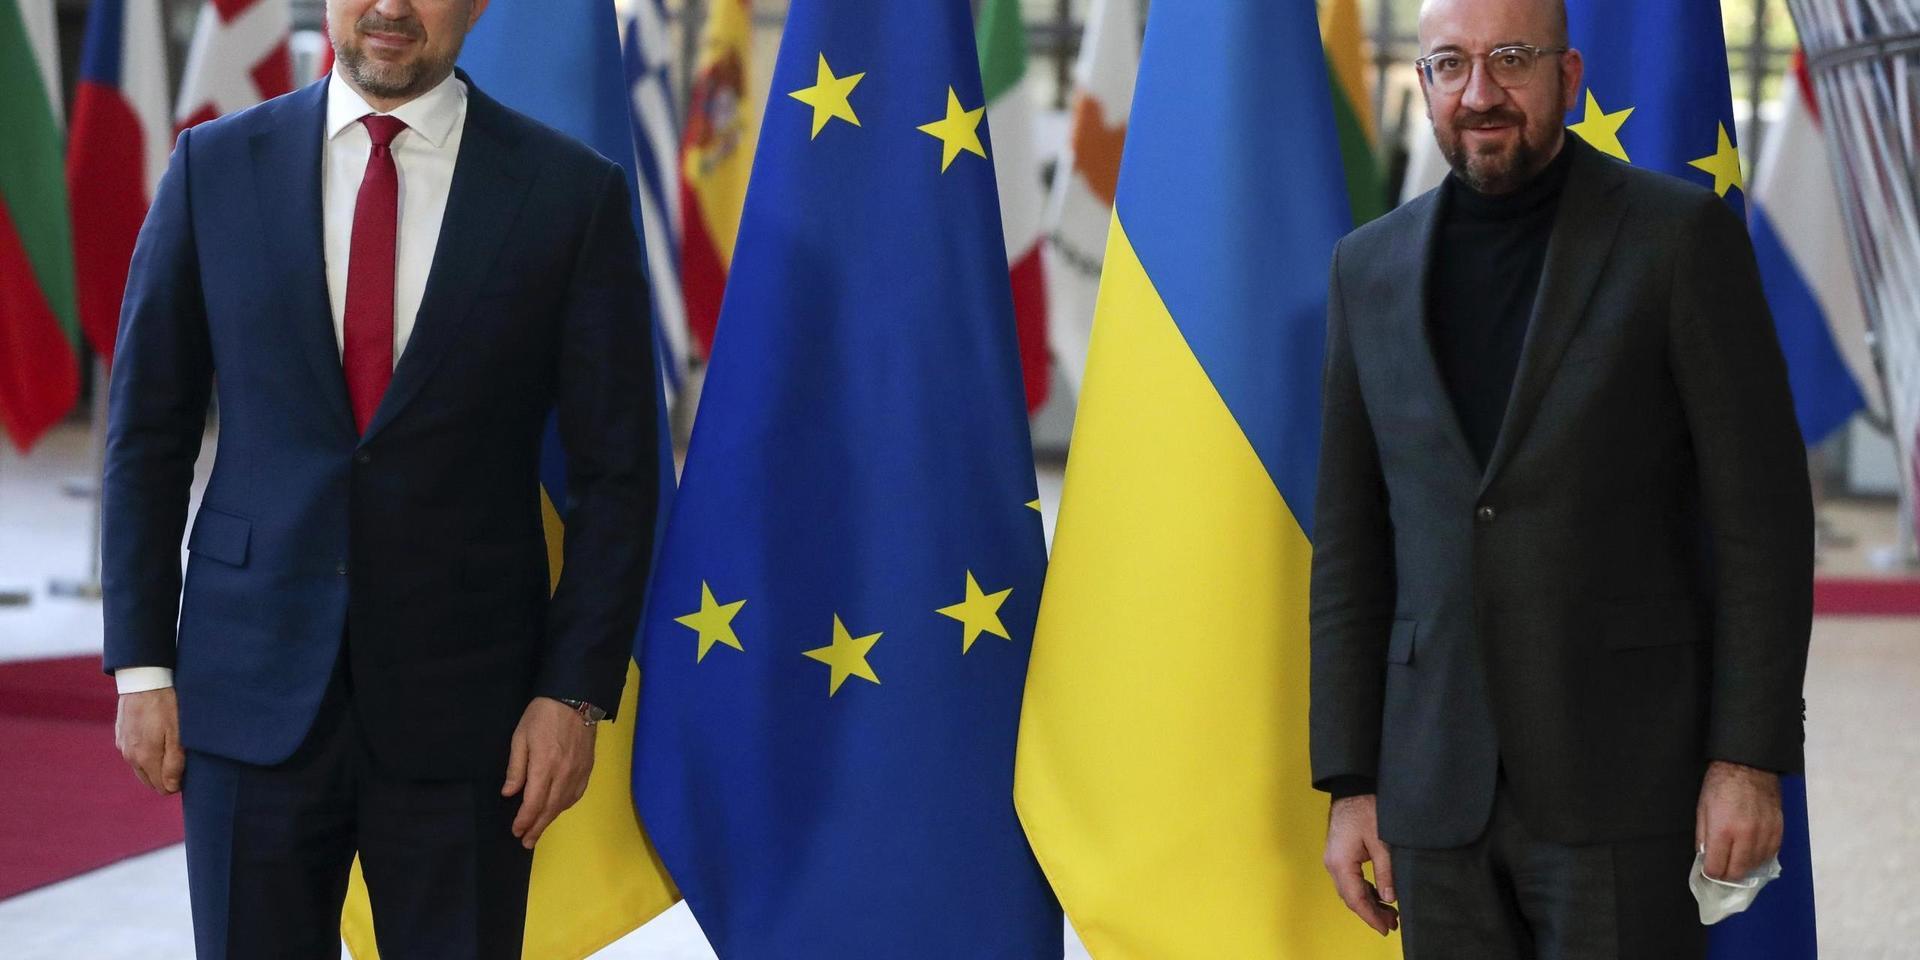 Ukrainas premiärminister Denys Sjmyhal (till vänster) träffar EU:s rådsordförande Charles Michel i Bryssel. Från EU får Ukraina och andra forna sovjetrepubliker nu ytterligare stöd för covid-19-vaccineringen. Arkivfoto.